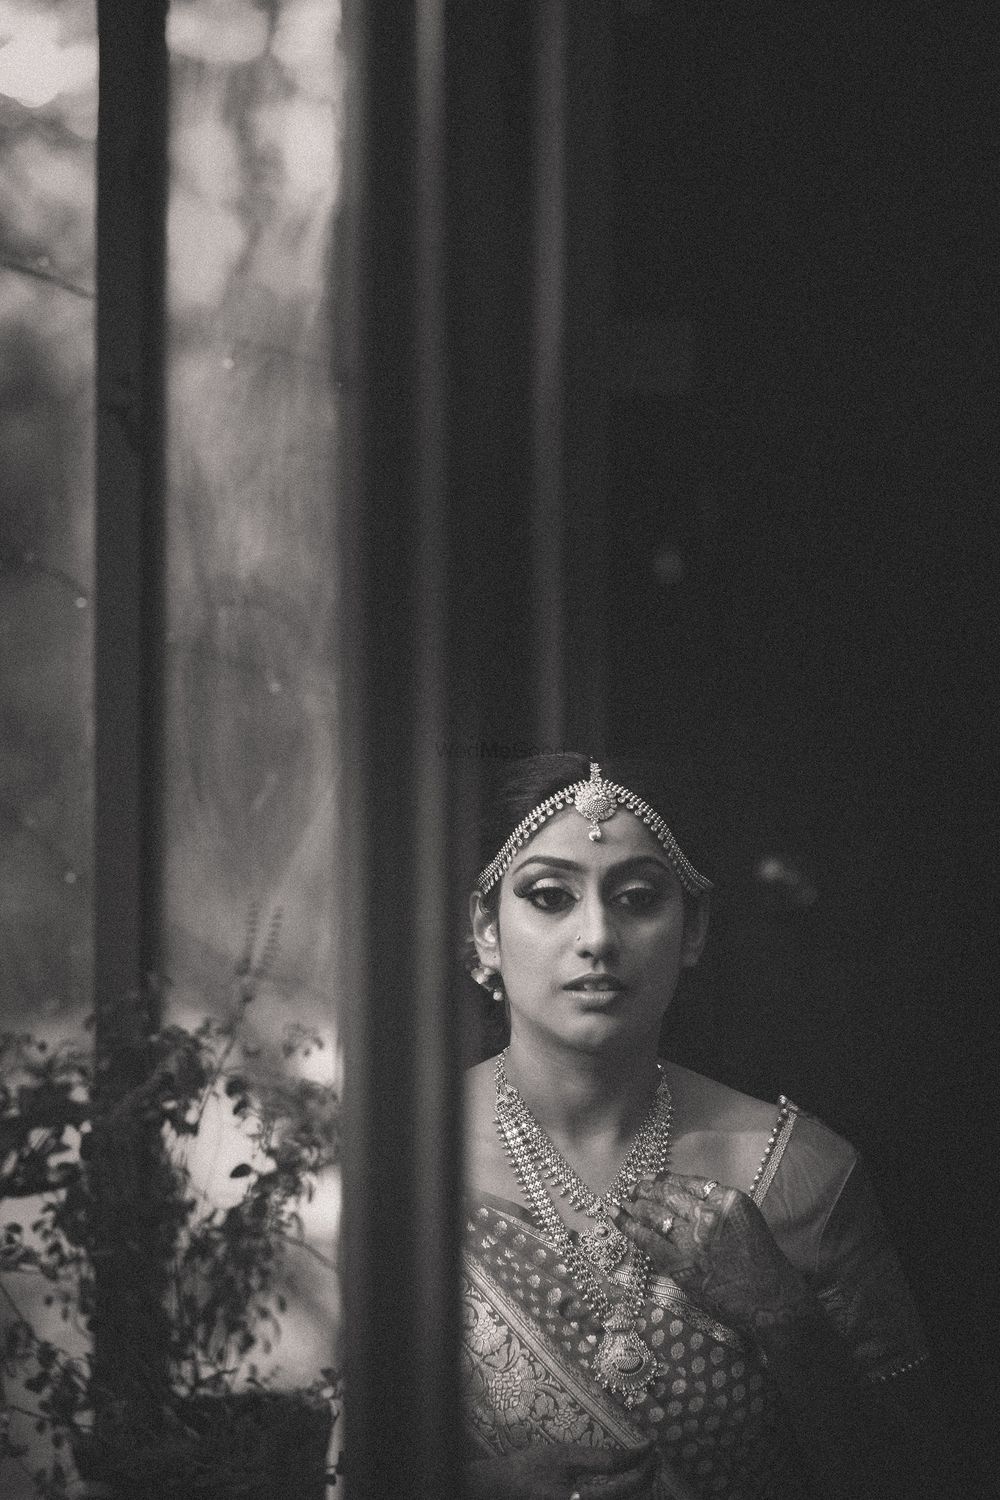 Photo From Wedding Nikitasha & Ashwin - By Nimitham Wedding Photography